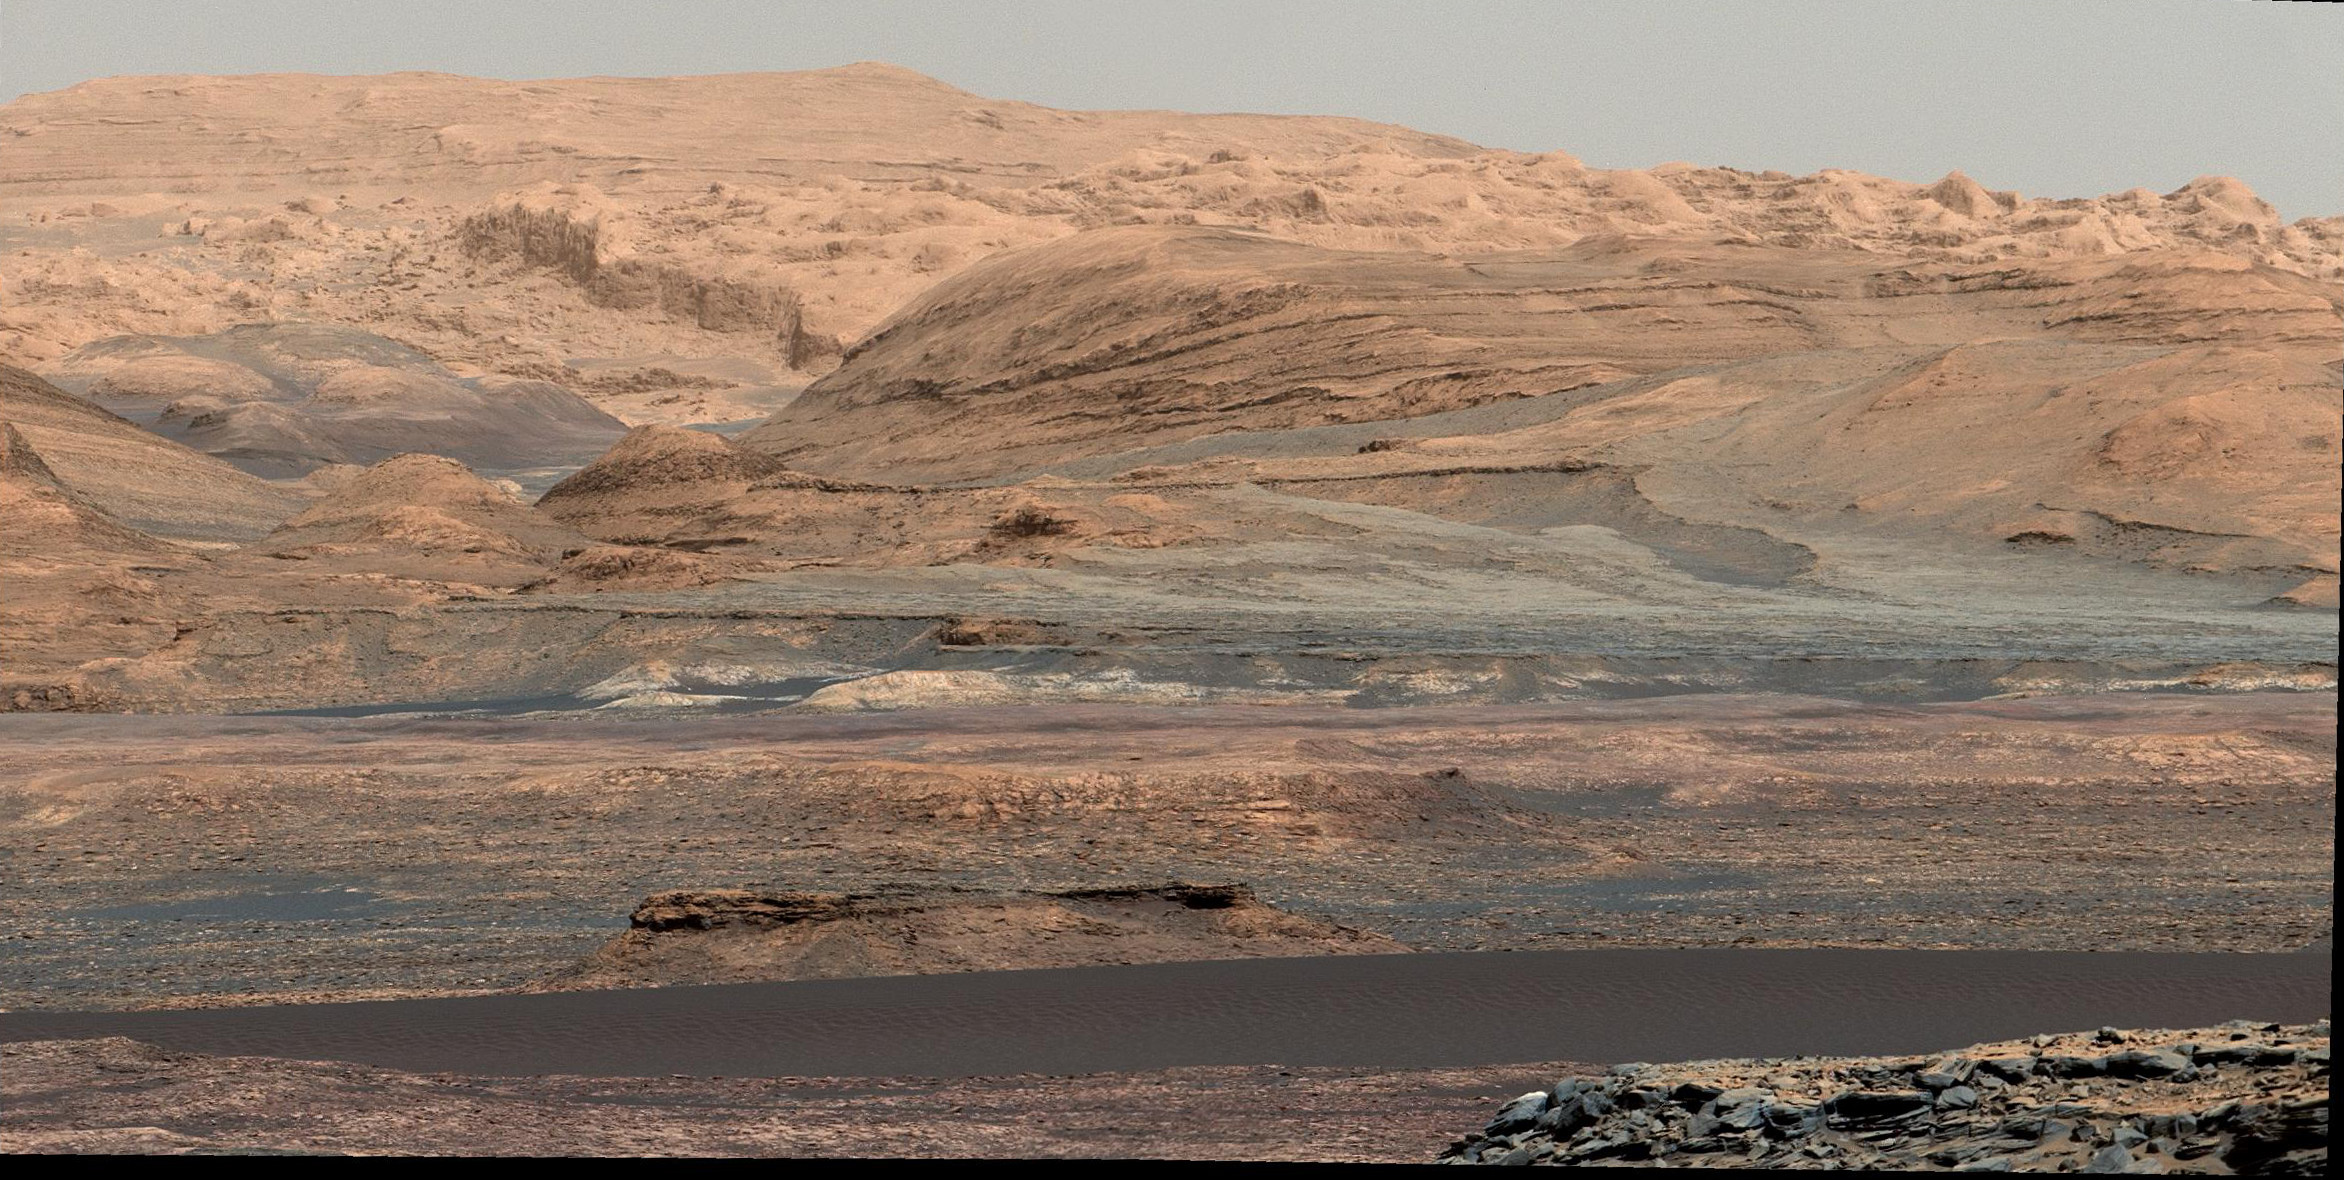 Paysage photographié par Curiosity (image mosaïque) le 25 septembre 2015 lors du Sol 1.115. La bande sombre visible dans la partie basse de l’image est une partie des dunes de Bagnold qui s’étendent le long du flanc nord-ouest du mont Sharp. Le 15 novembre, le rover n’était plus qu’à quelques dizaines de mètres de la dune n°1 qui sera la première examinée en détail sur un autre monde que la Terre. © Nasa, JPL-Caltech, University of Arizona